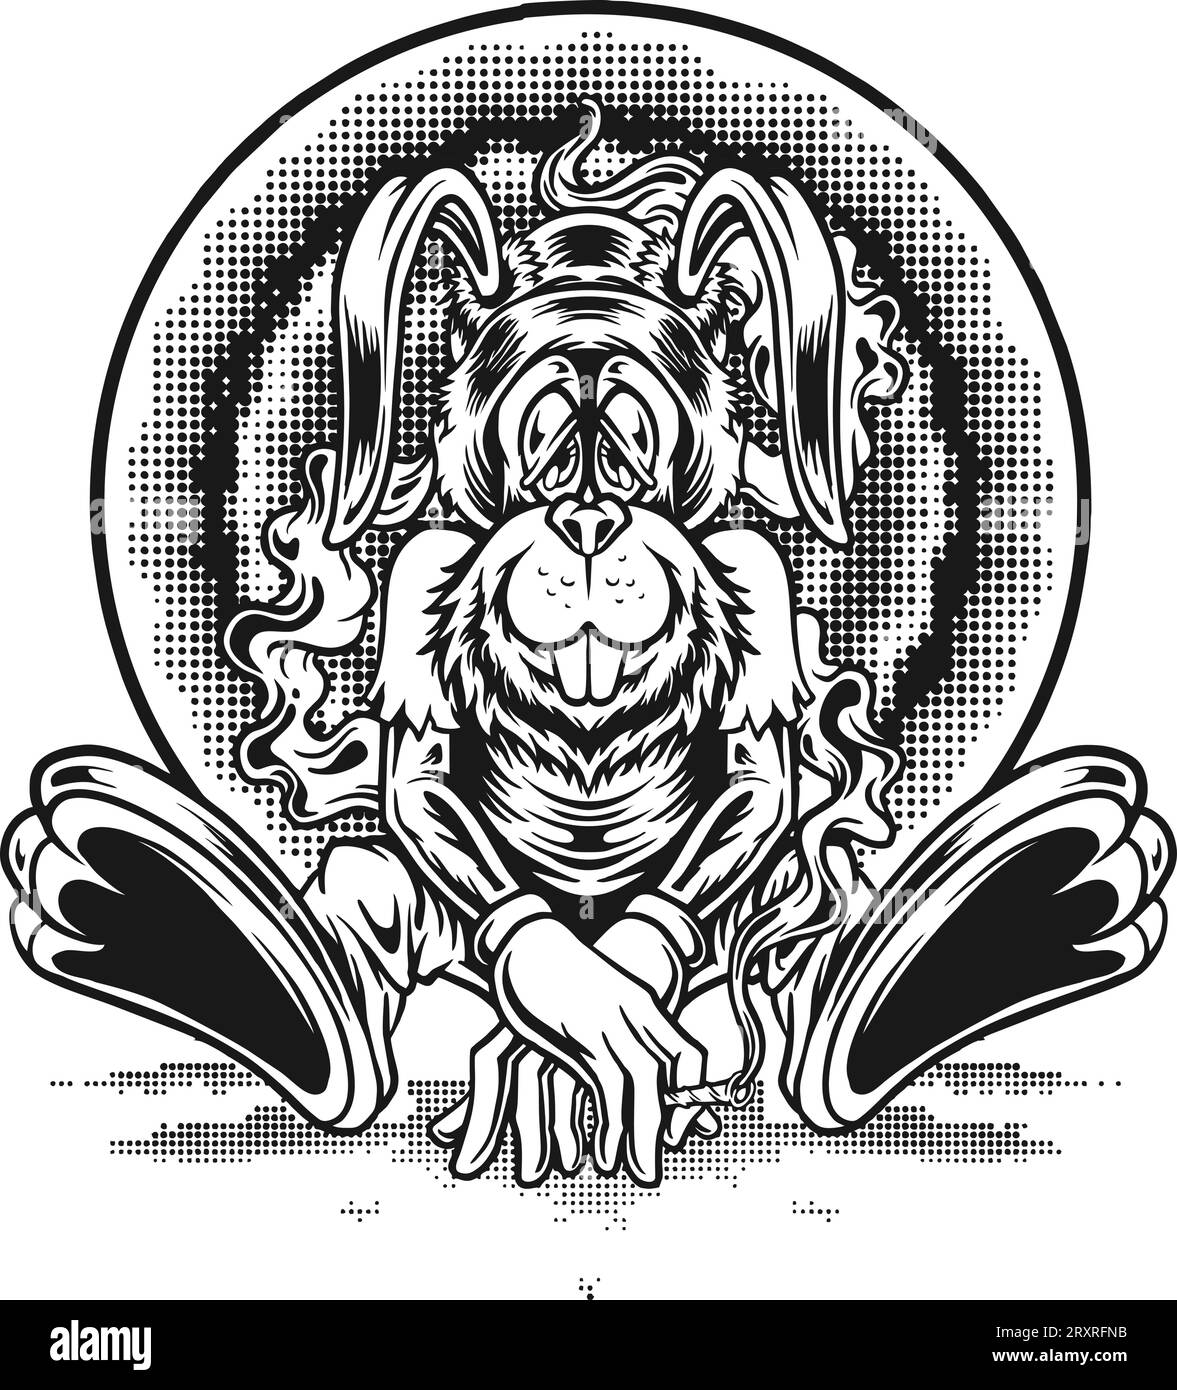 Bunny cannabis psychédélique fiesta rêve illustrations vectorielles monochromes pour votre logo de travail, t-shirt de marchandises, autocollants et dessins d'étiquettes, affiche, g Illustration de Vecteur